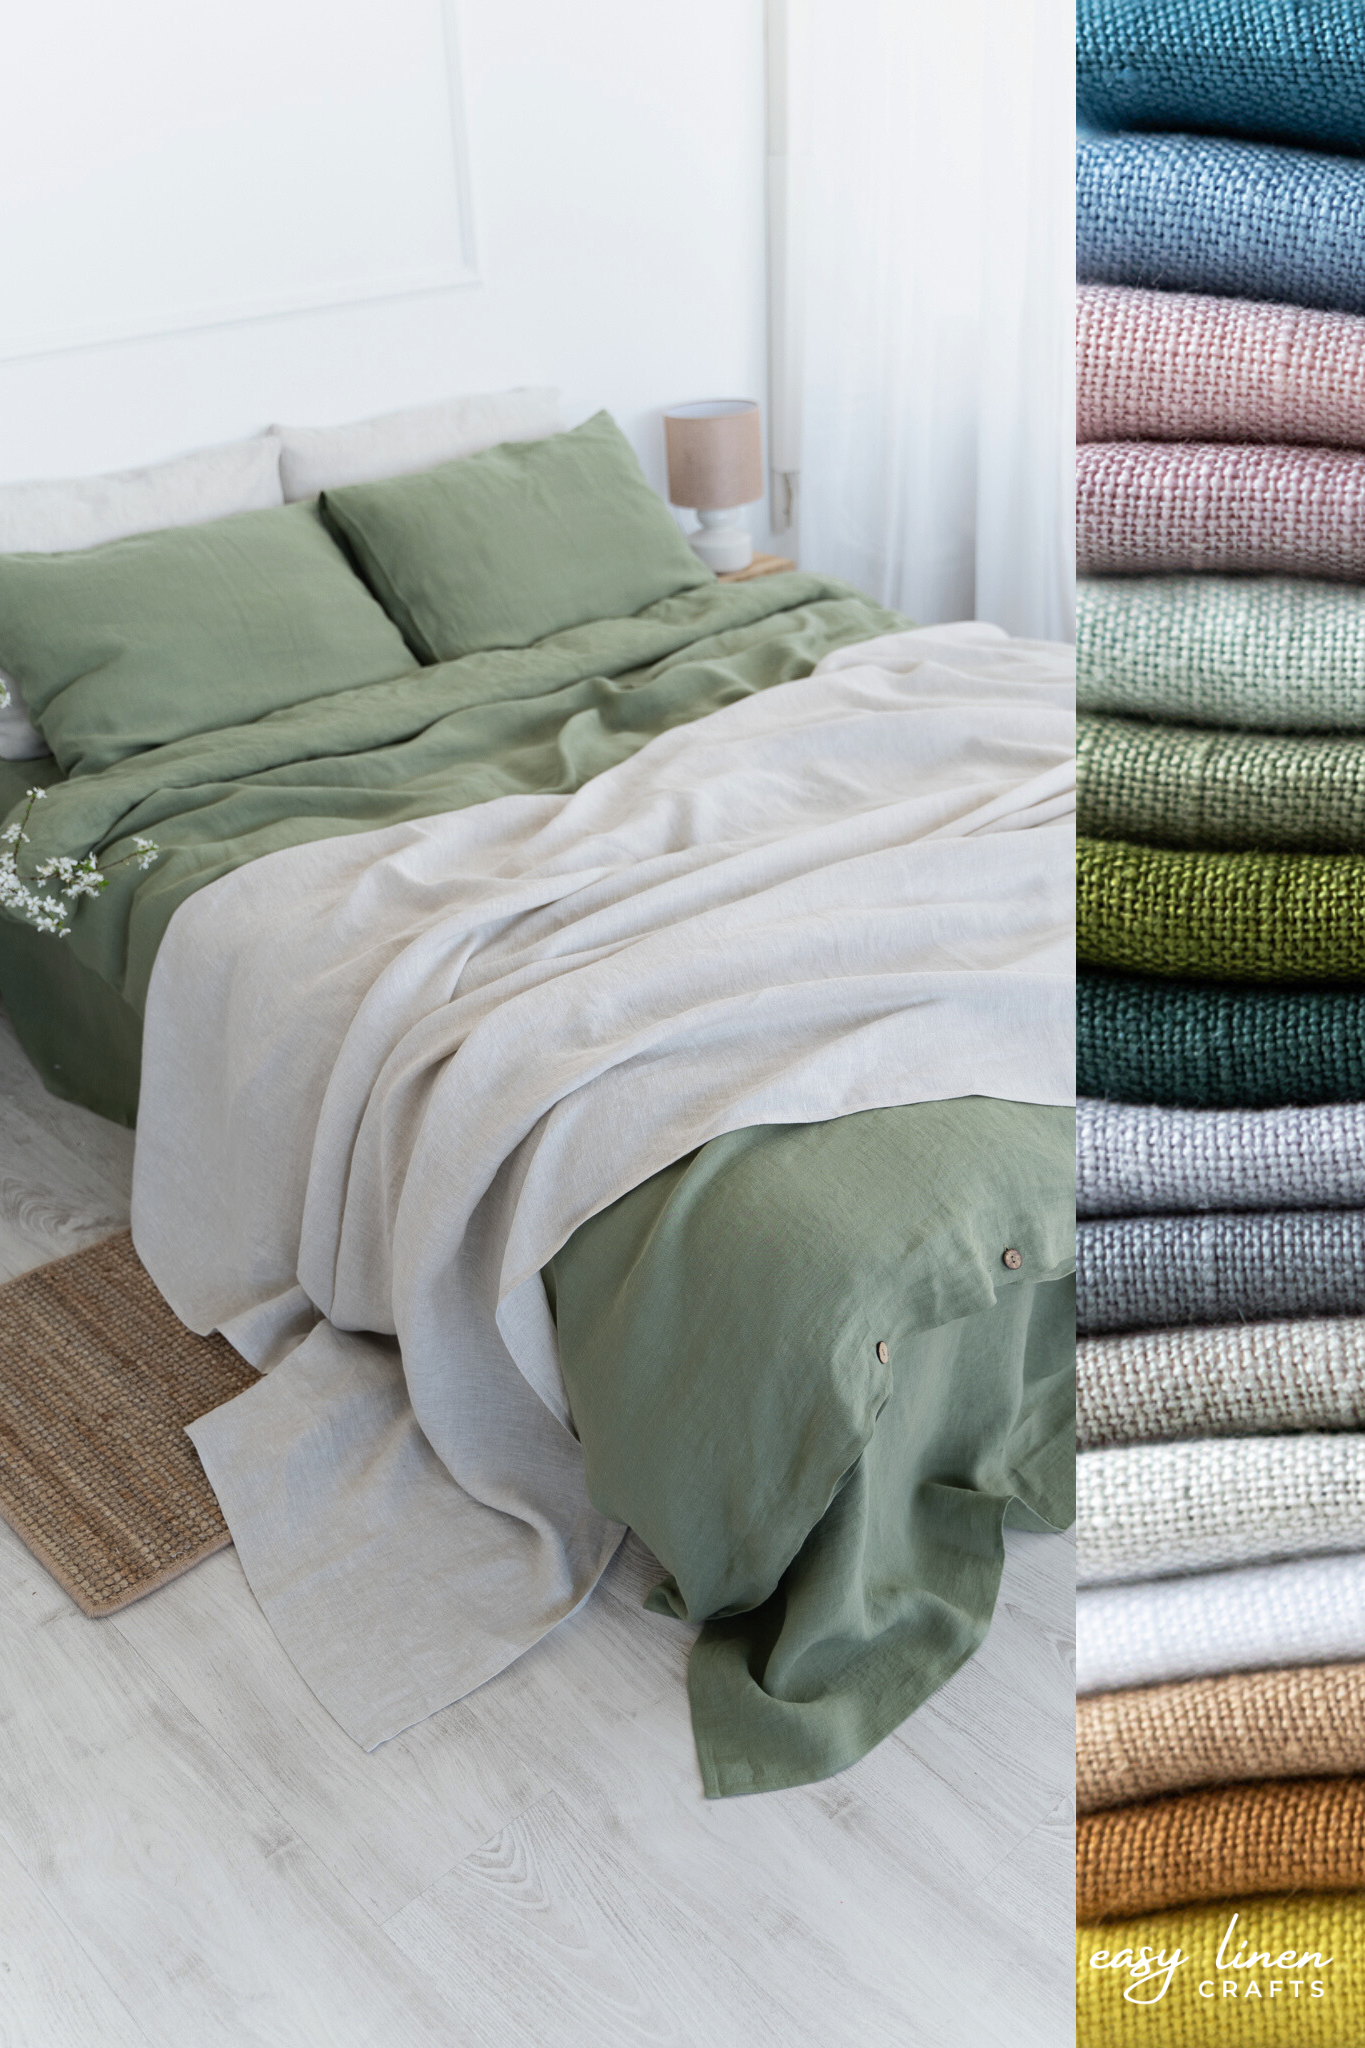 Linen Bedspread in Natural Light color